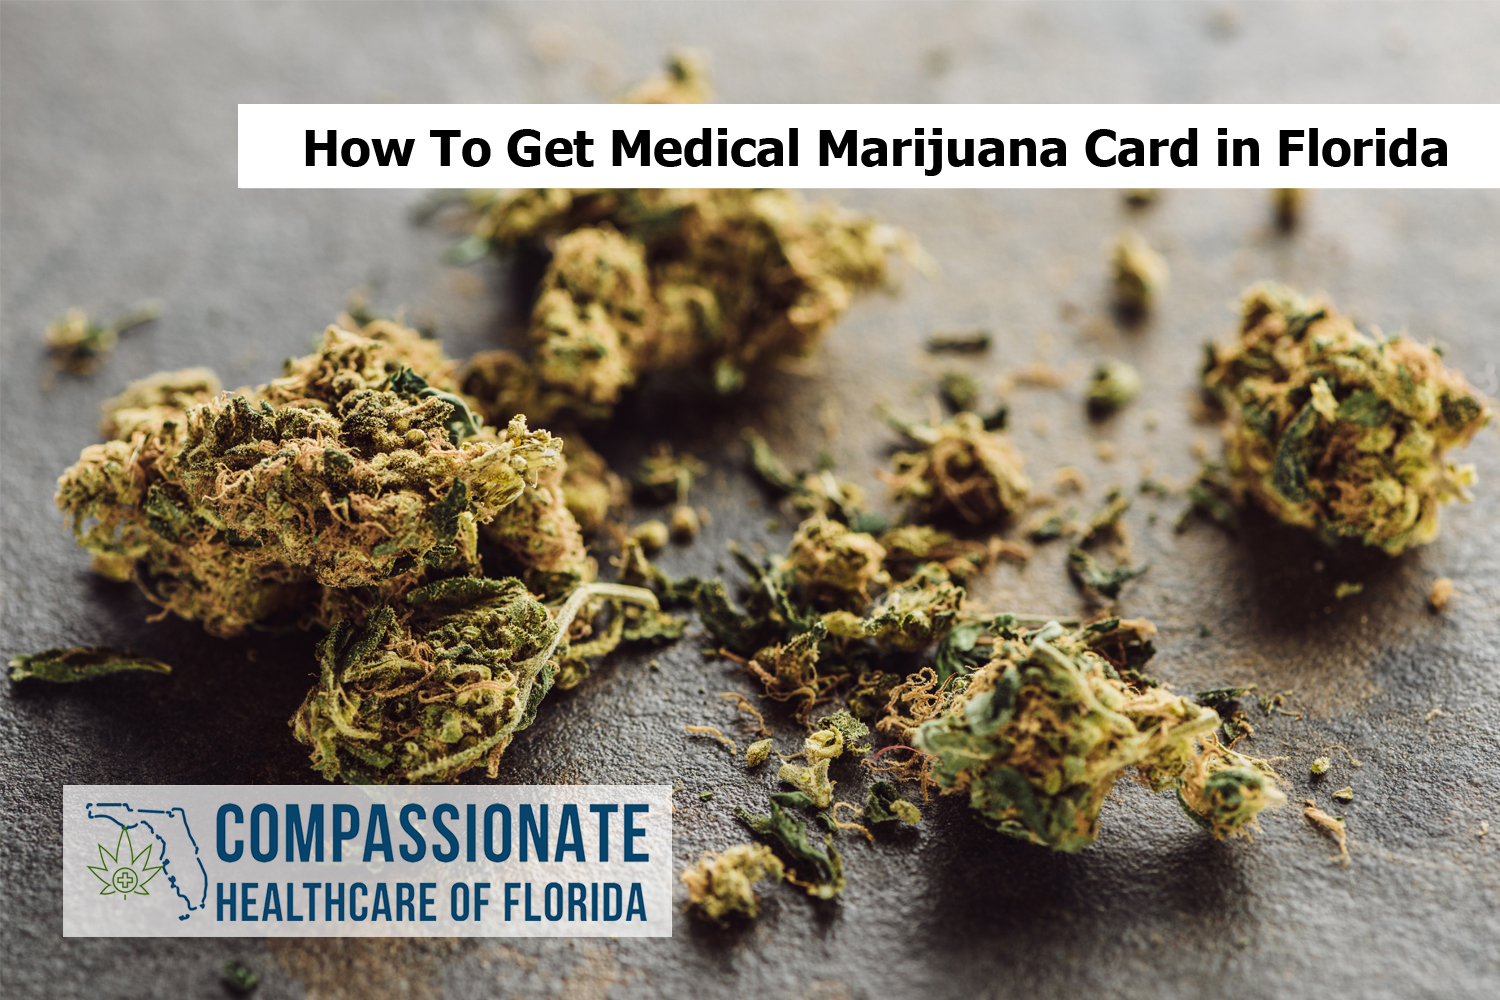 How To Get Medical Marijuana Card in Florida